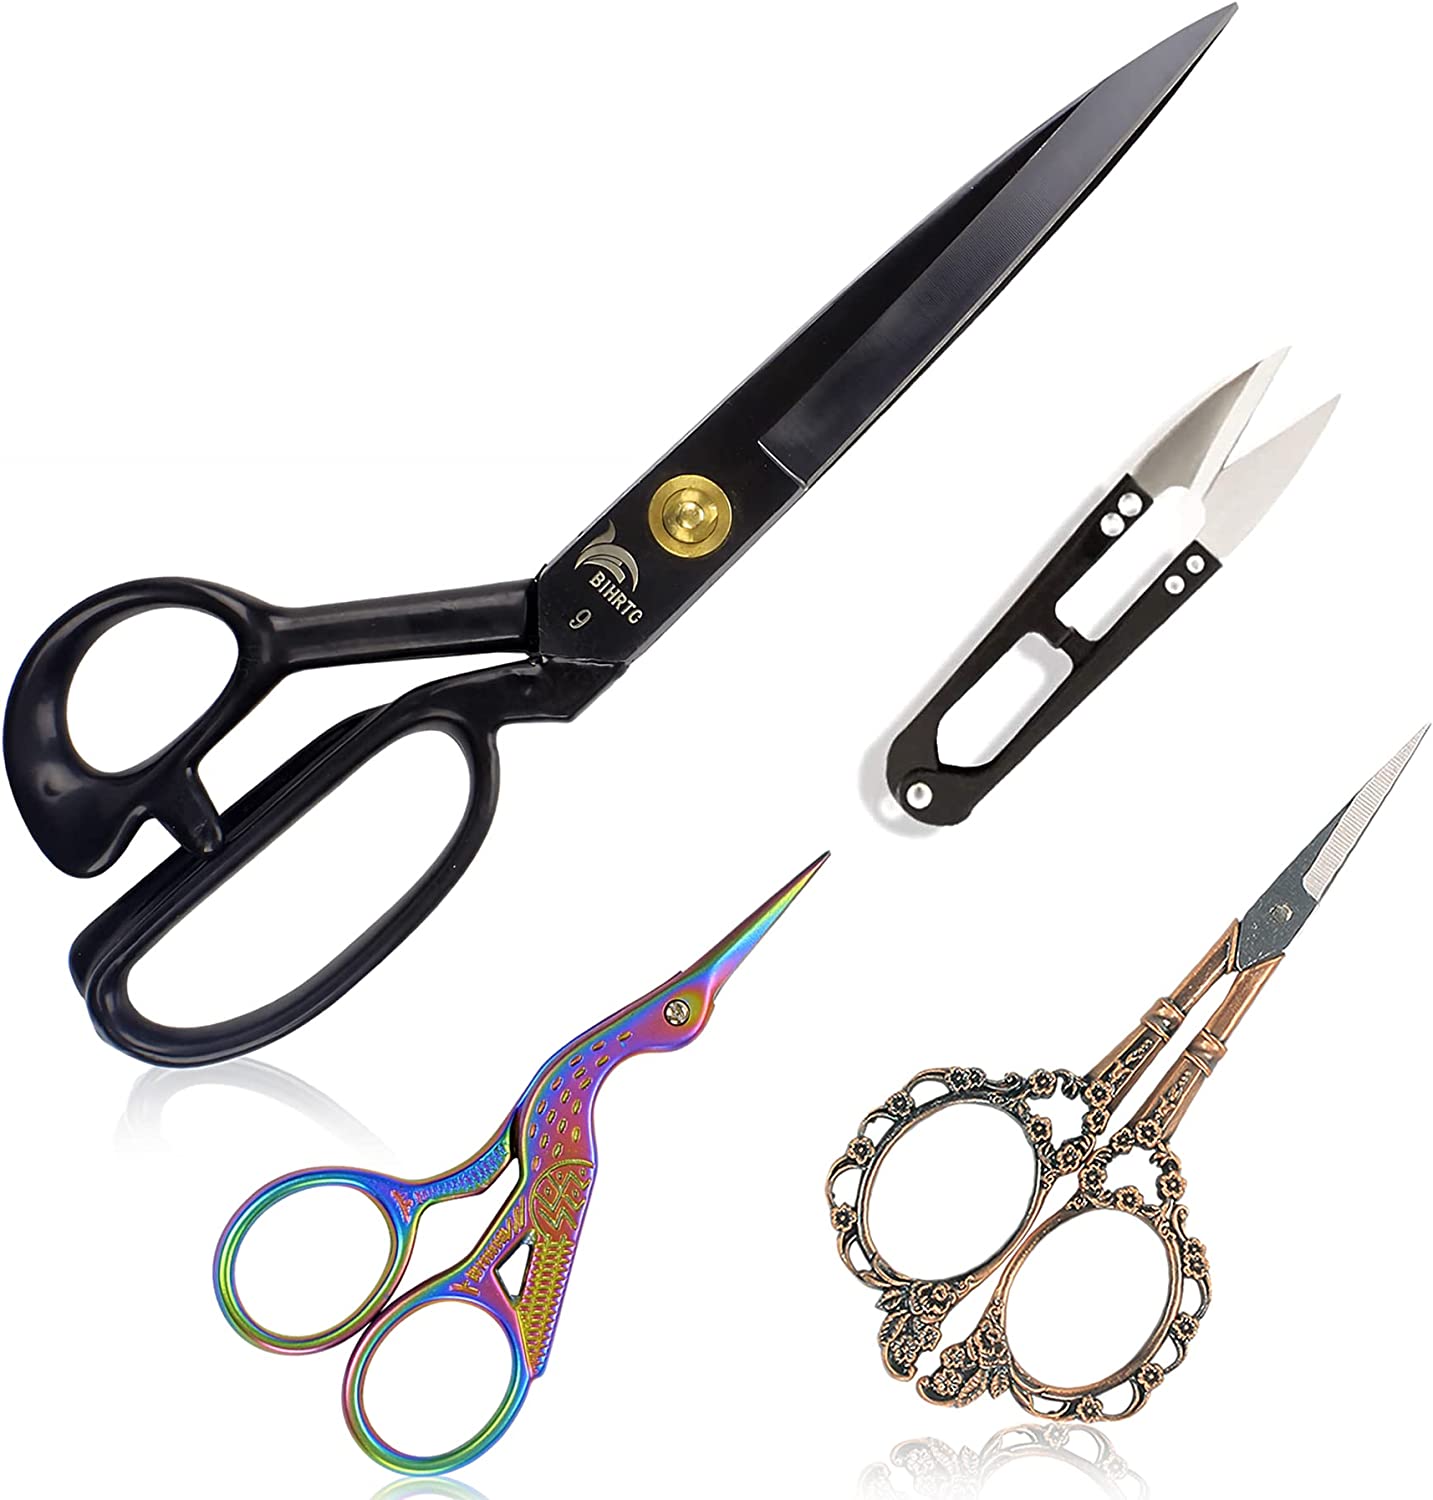 https://www.dontwasteyourmoney.com/wp-content/uploads/2022/05/bihrtc-high-carbon-steel-sewing-scissors-9-inch.jpg